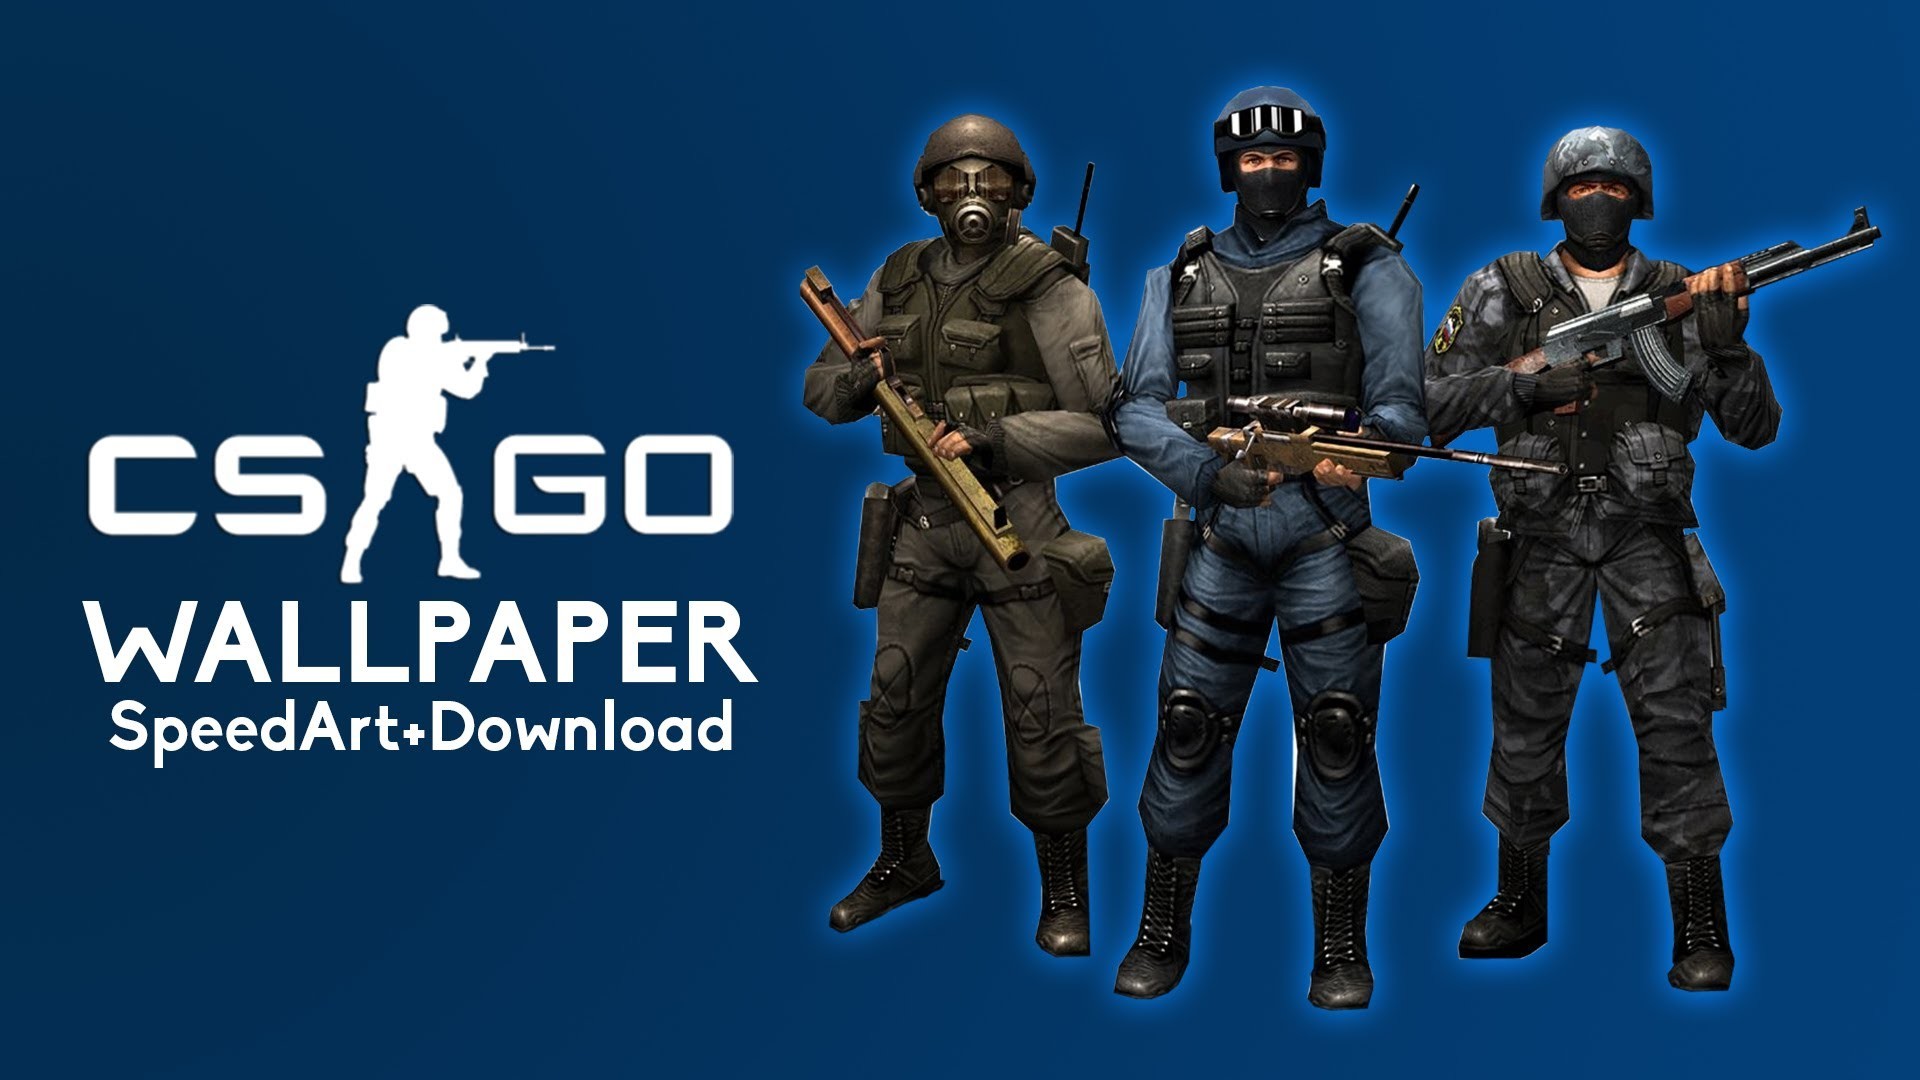 1920x1080 CS:GO (Counter Strike: Global Offensive) Wallpaper (SpeedArt+Download)